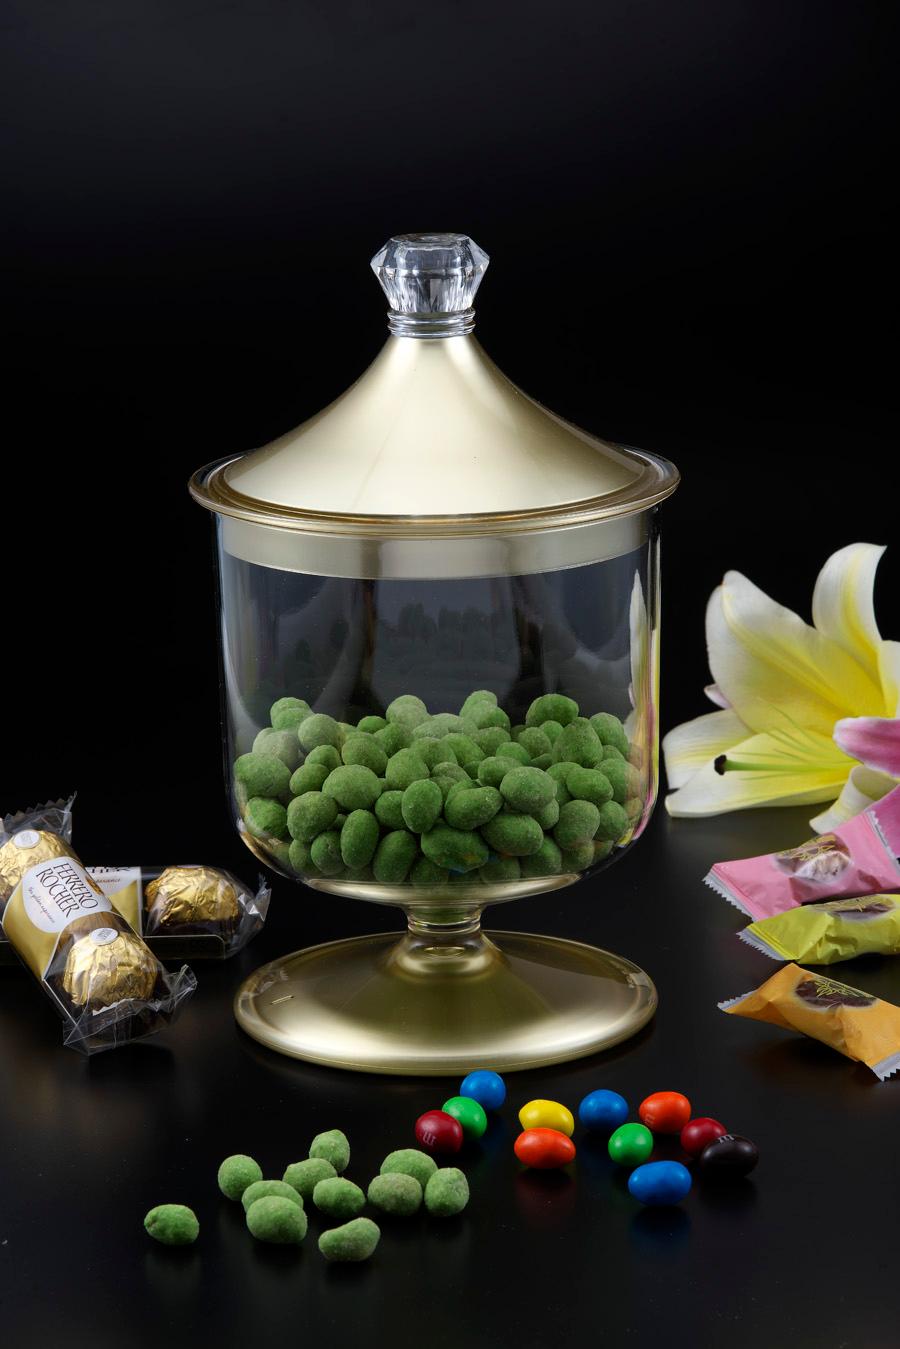 كاندي بوكس أكريليك لارج صناعة تايوان شفاف وذهبي ڤاج Vague Acrylic Candy Jar L Gold Transparent Acrylic